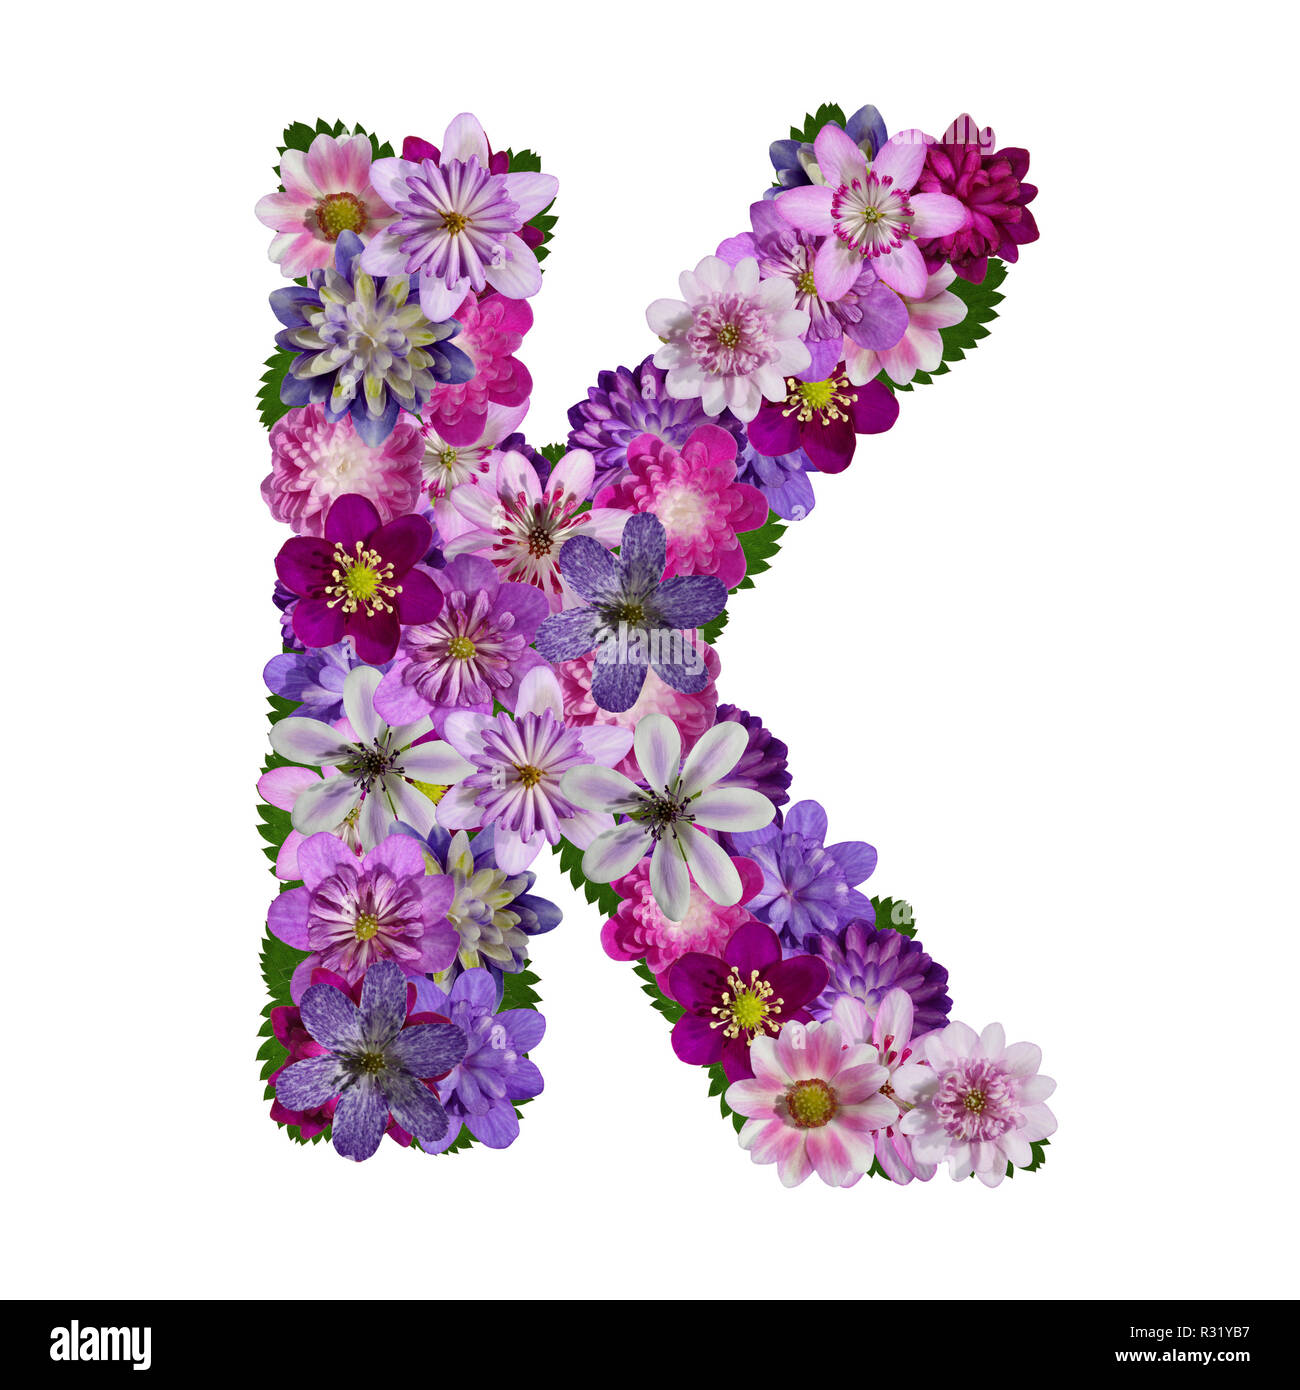 flowers alphabet letter k Stock Photo